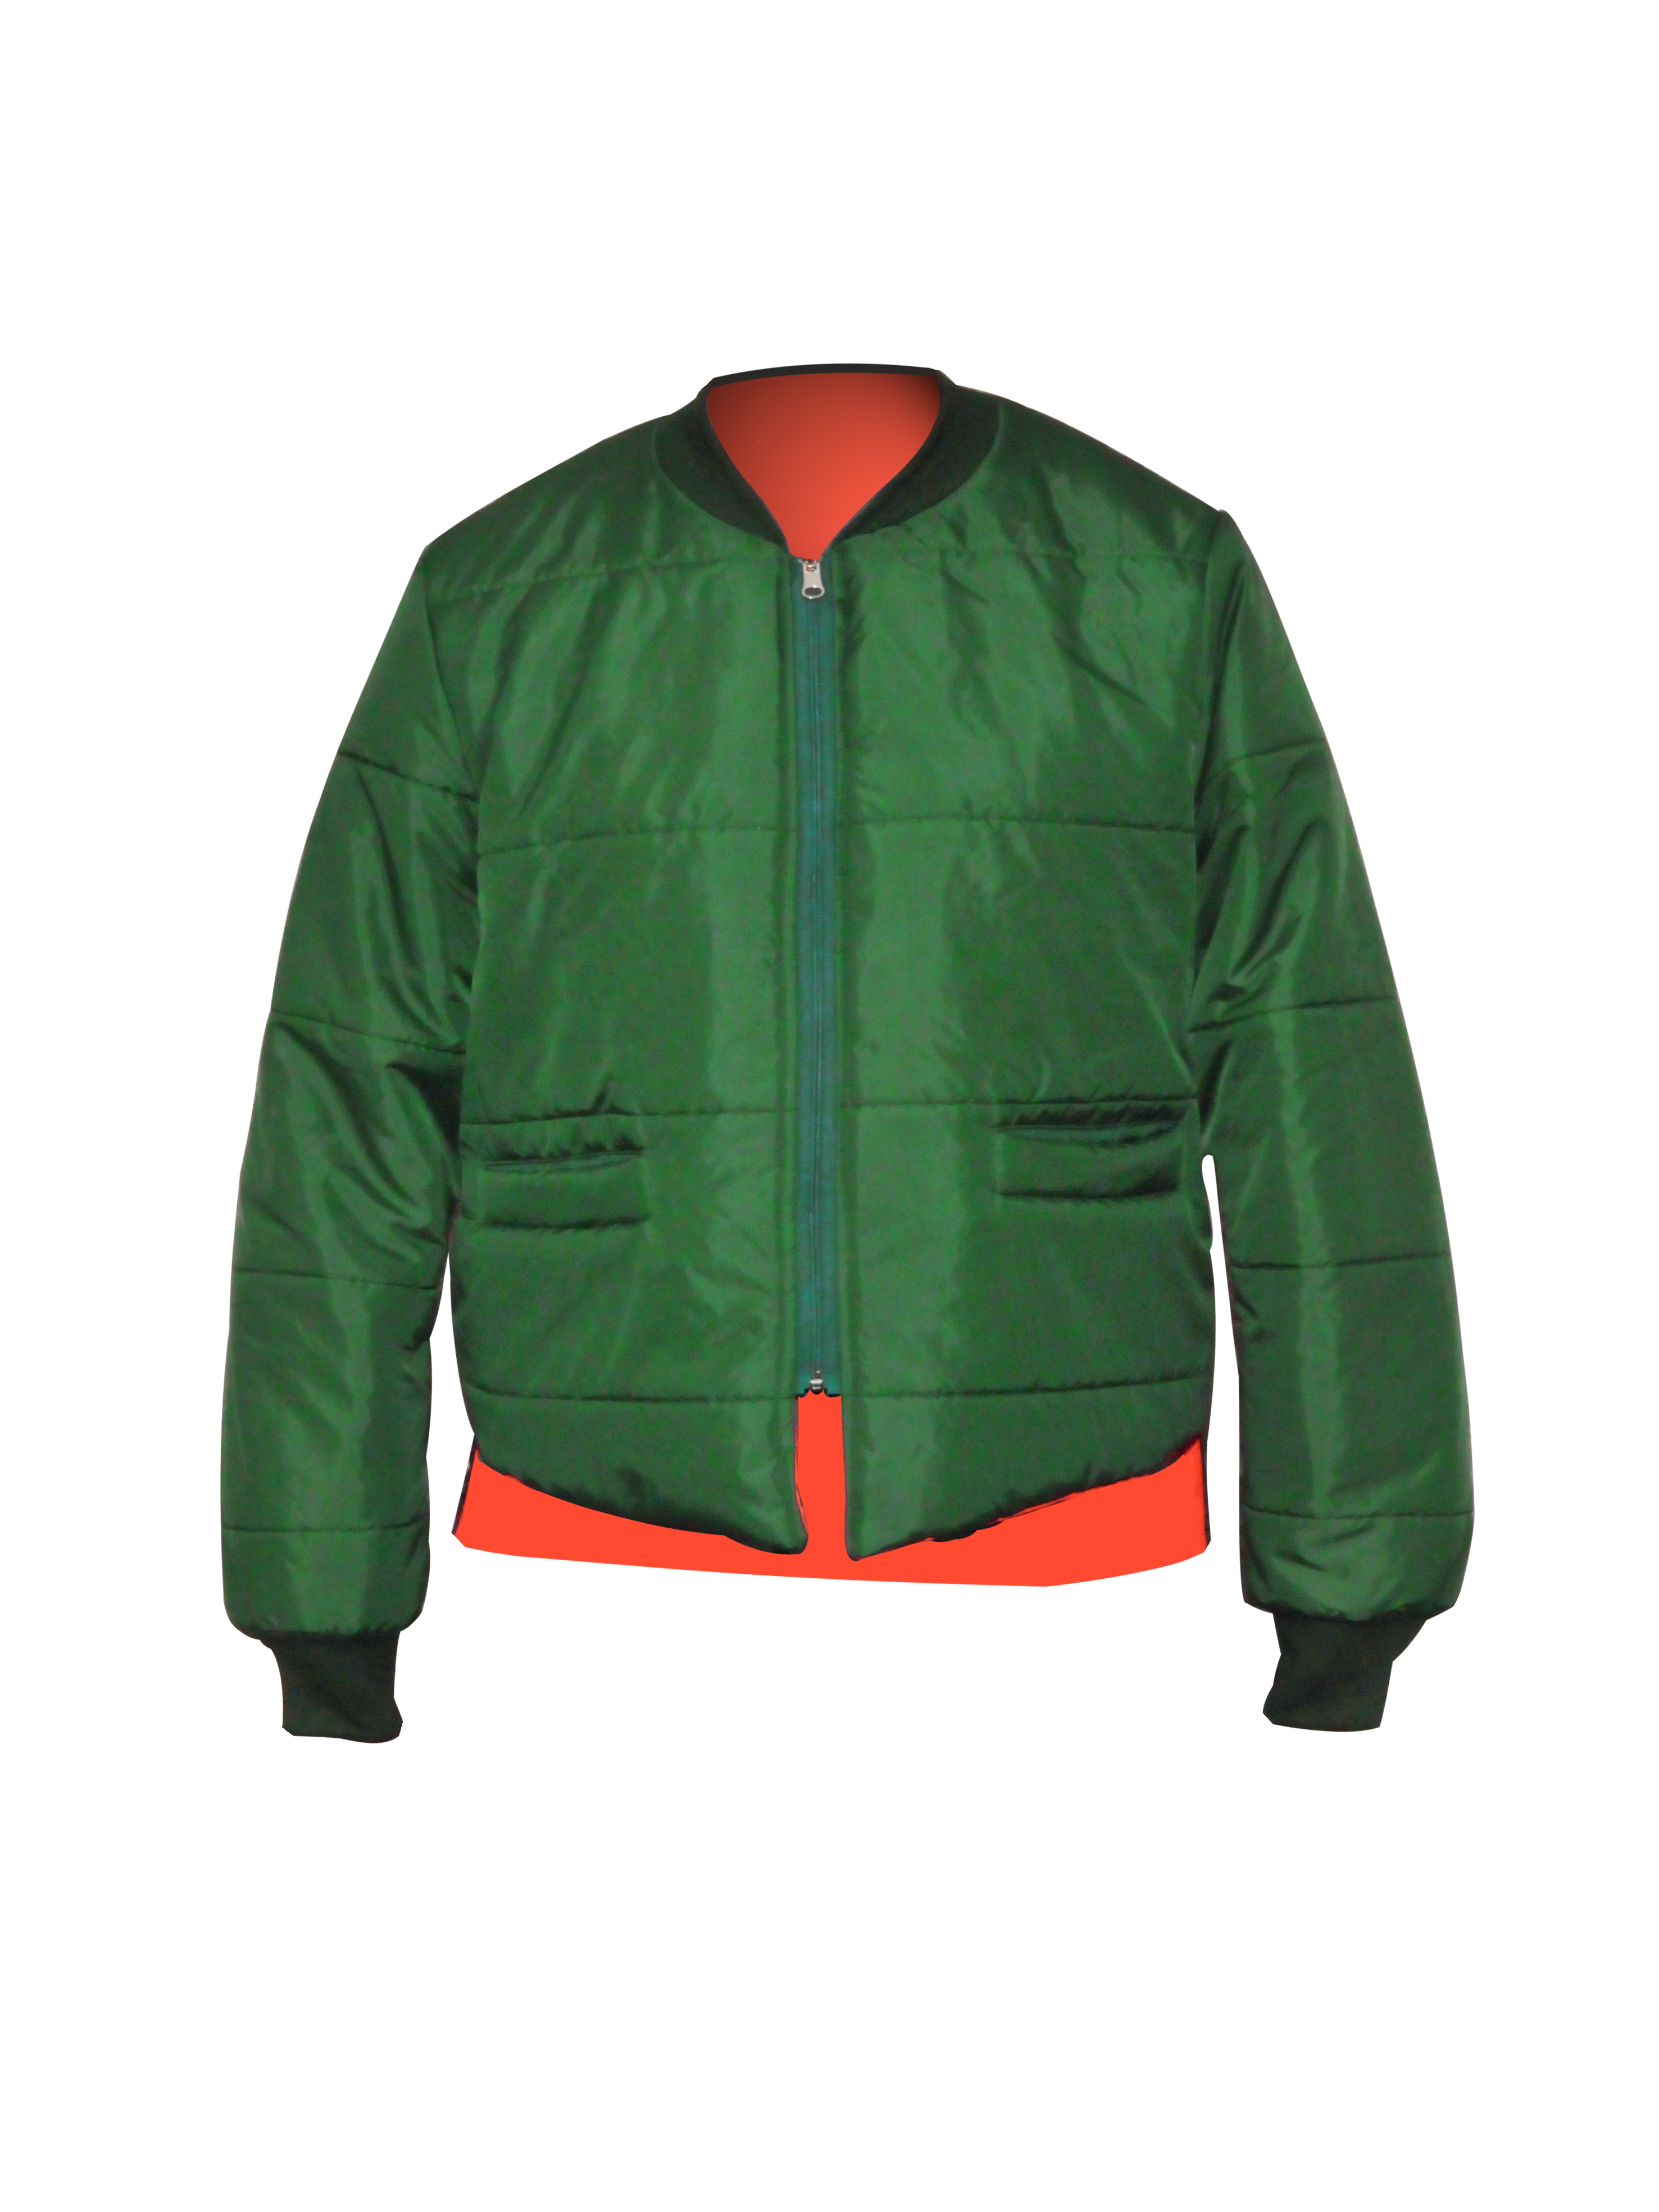 Big Al Green-Orange 100% Nylon Jacket - 1404